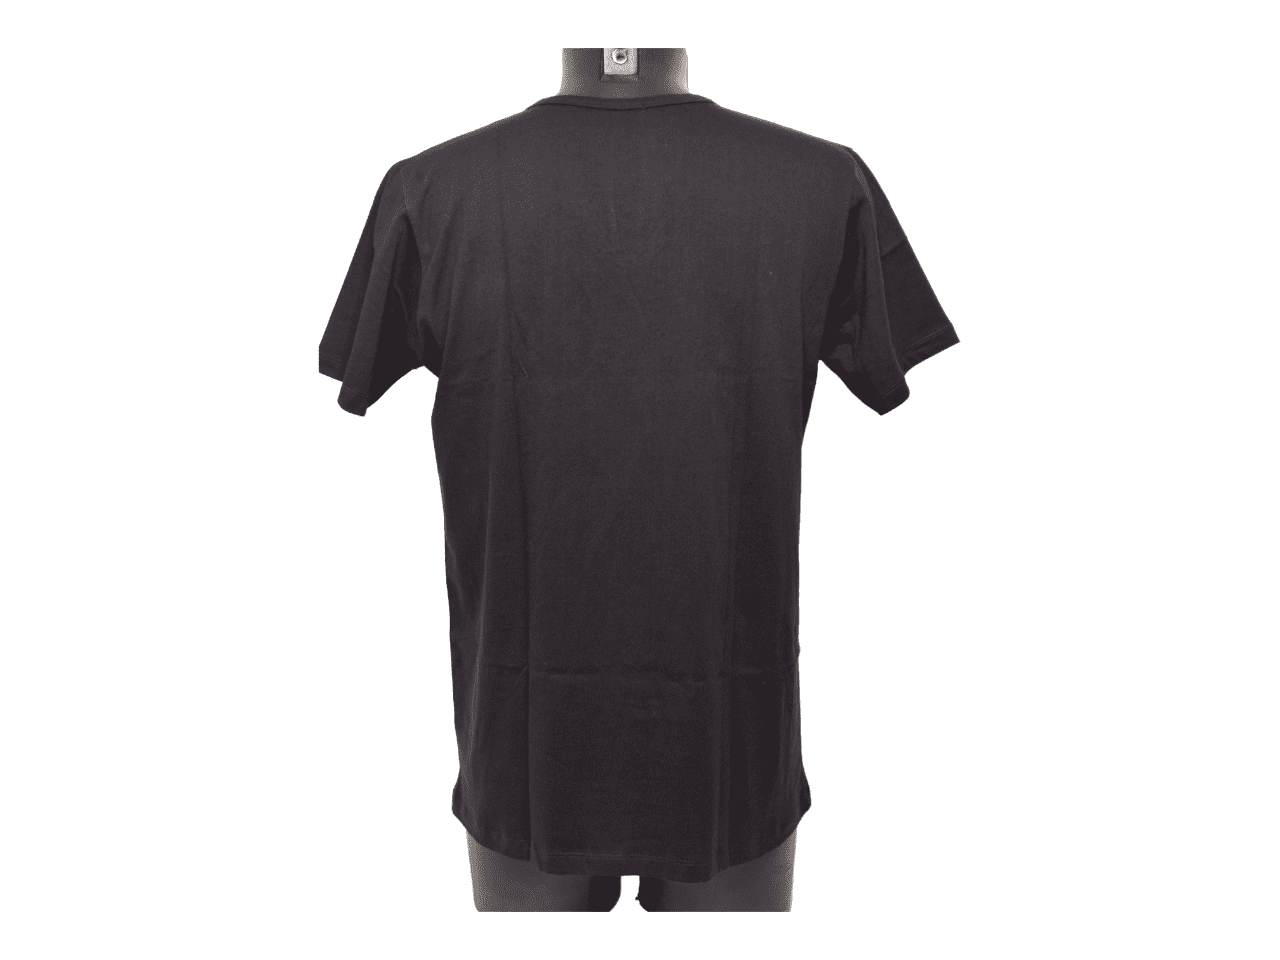 T-Shirt ROCHAS modèle blanc et noir col V 100% coton par lot de 2 taille L